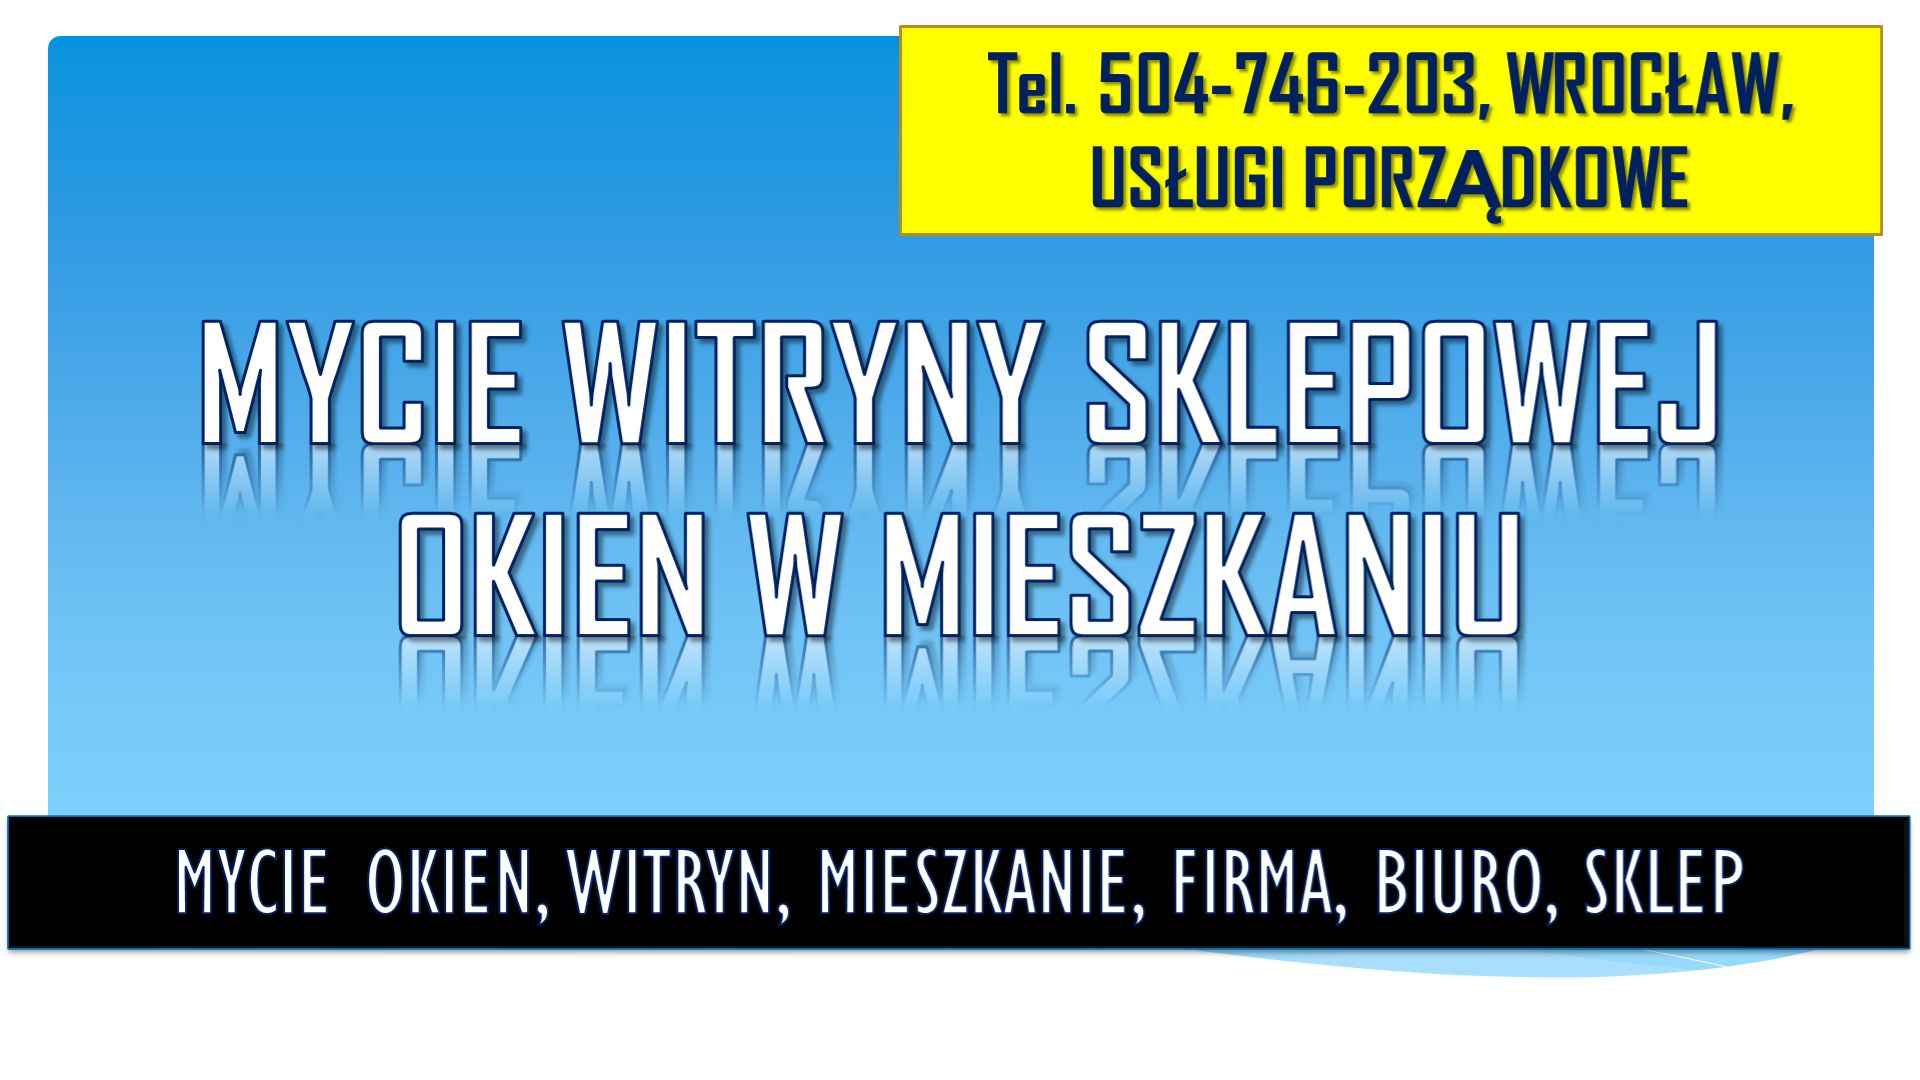 Cennik mycia okien, Wrocław, tel 504-746-203. Umycie witryny w sklepie Psie Pole - zdjęcie 3